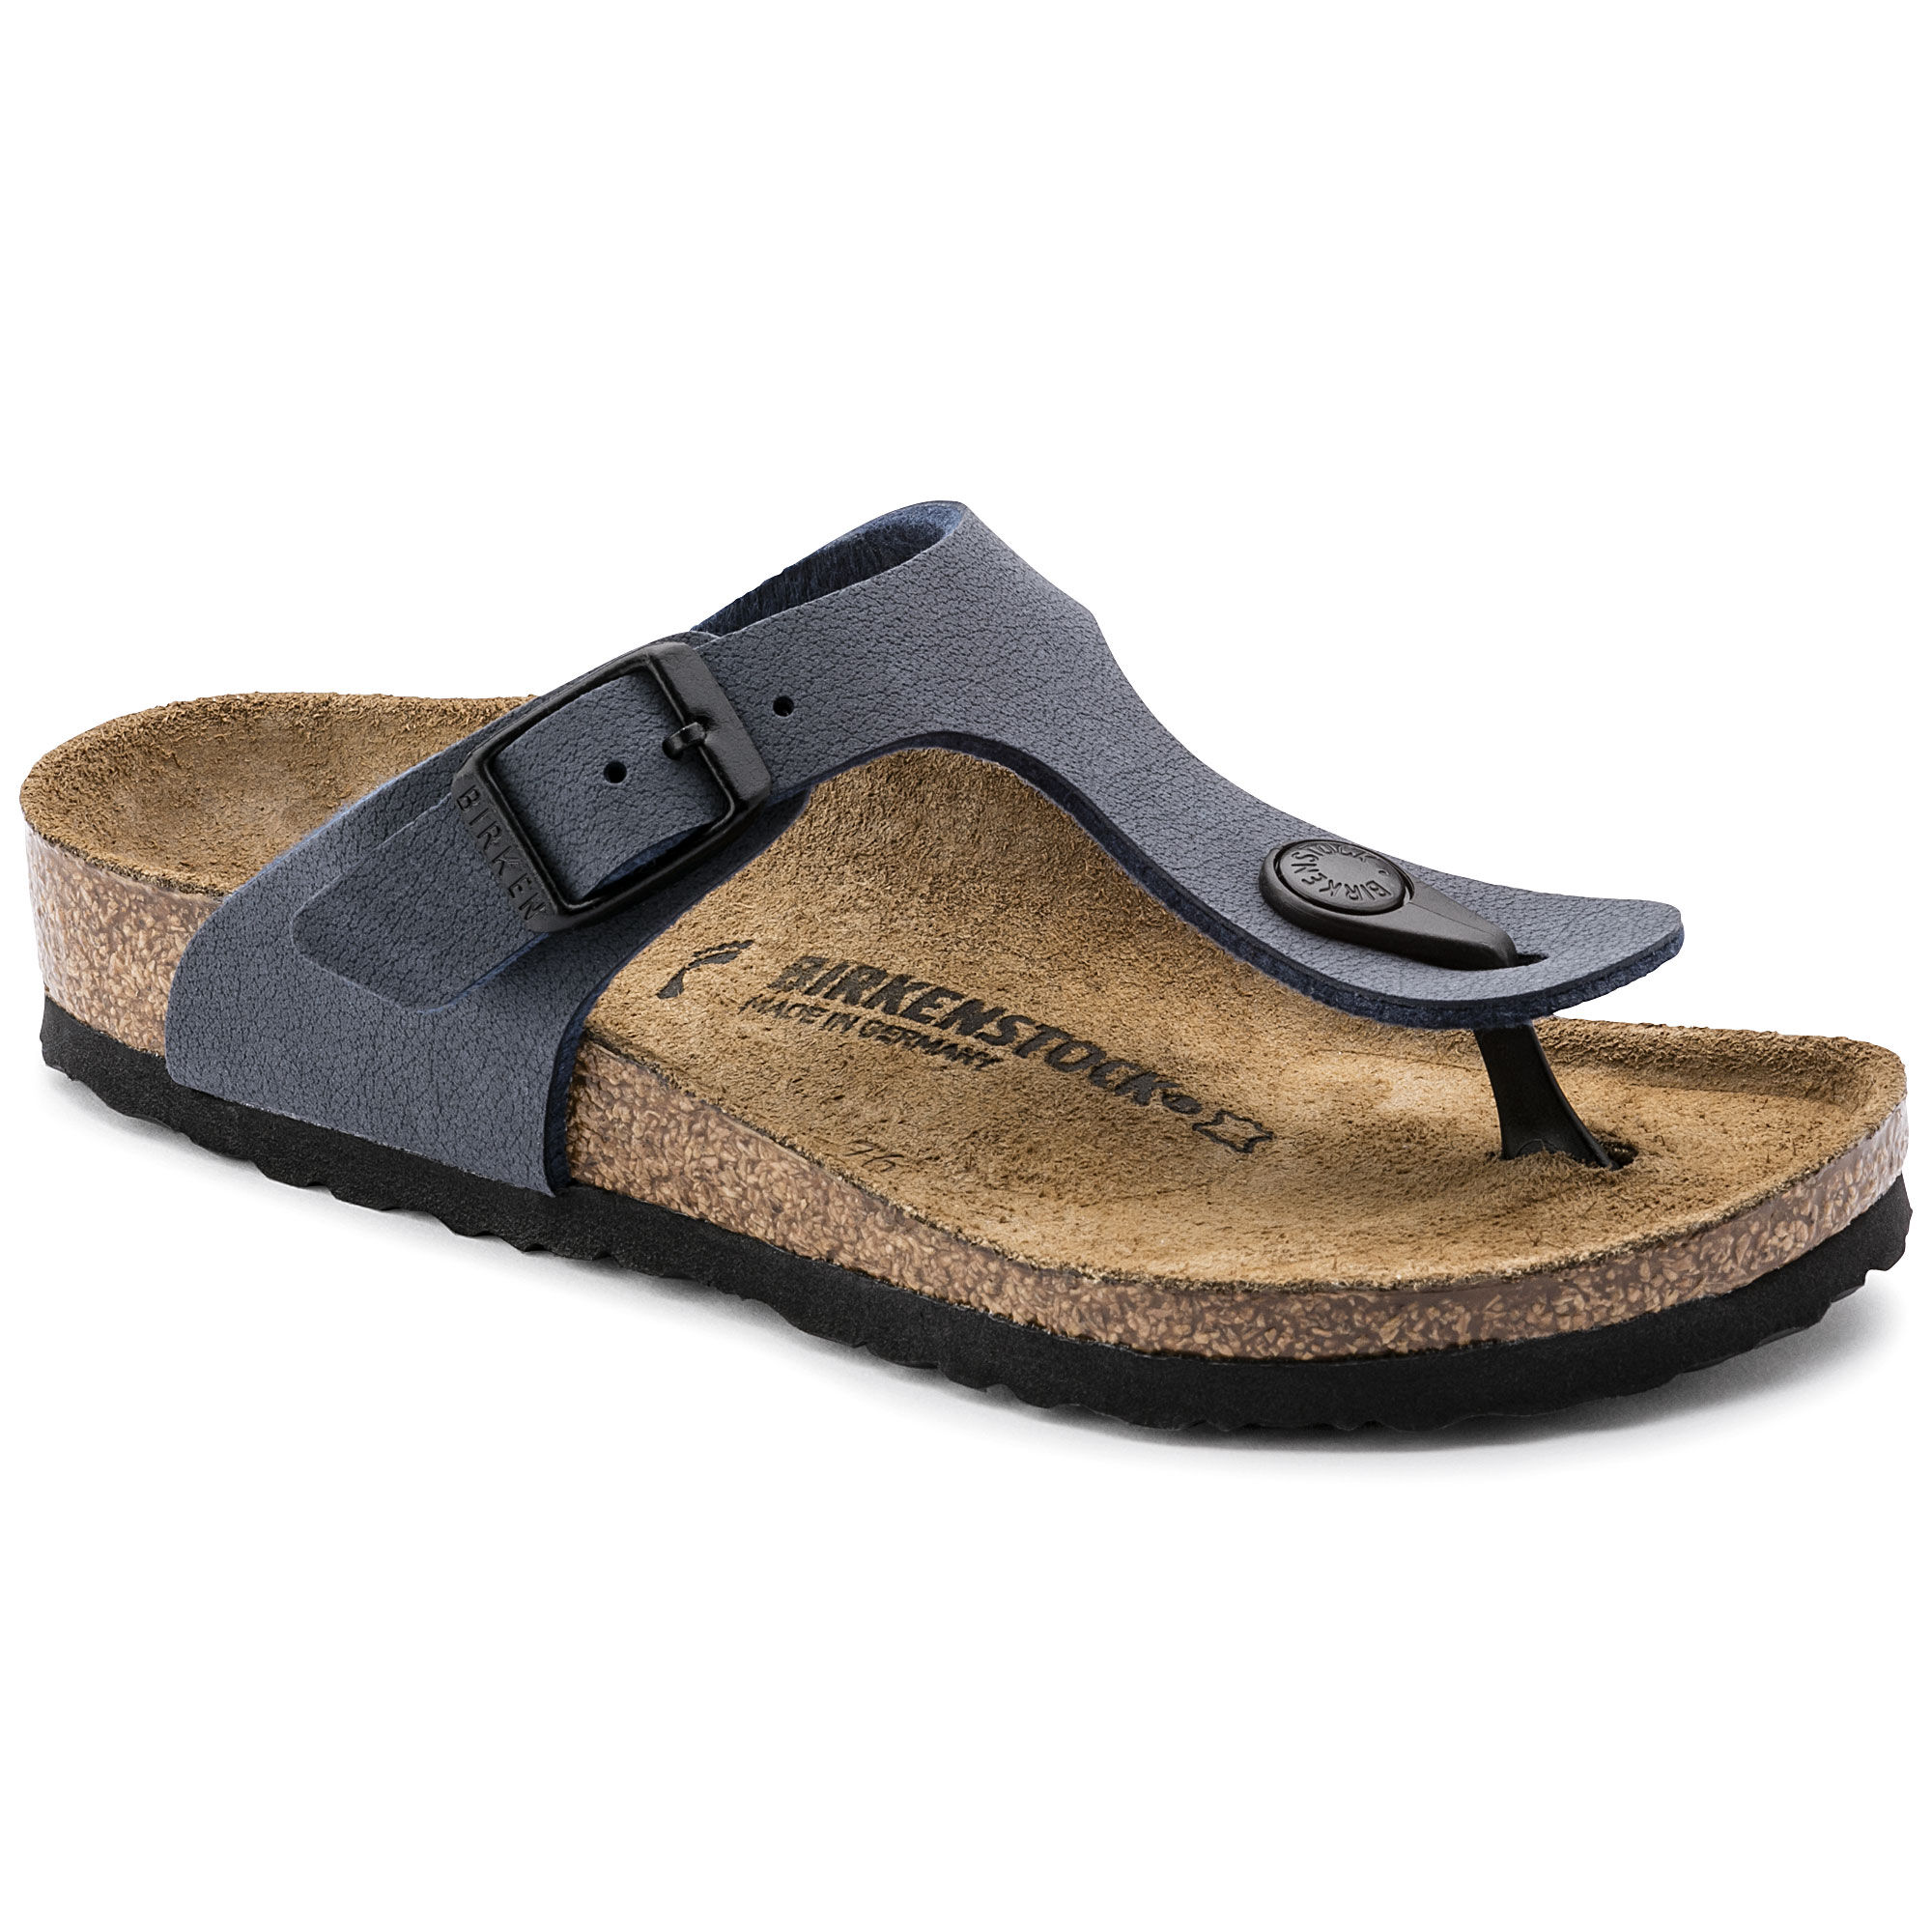 Kids sandals | shop online at BIRKENSTOCK